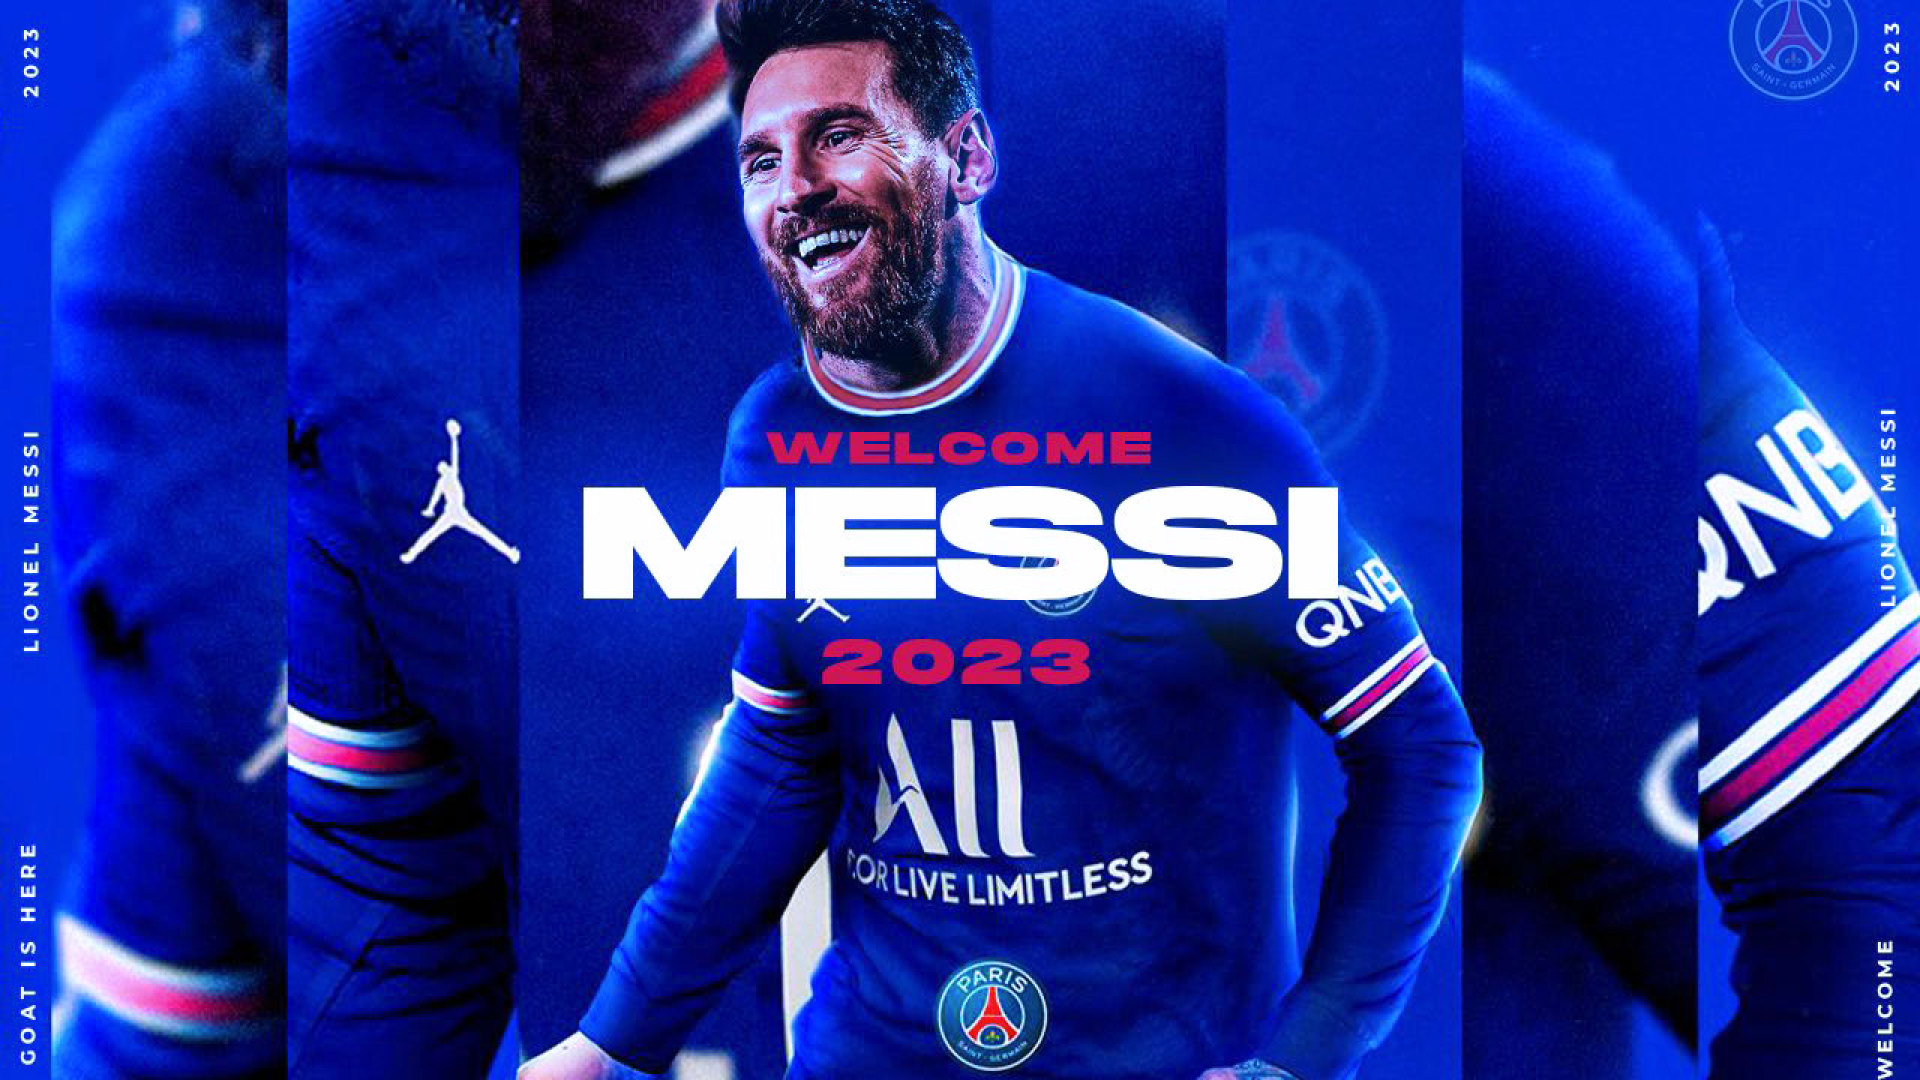 PSG Messi wallpapers: Sự kết hợp giữa Messi và PSG luôn là một đề tài hot. Hãy cùng ngắm nhìn những bức ảnh nền đẹp, sang trọng về đội bóng này và cầu thủ siêu sao Messi để cảm nhận sự độc đáo và hấp dẫn của cả hai!